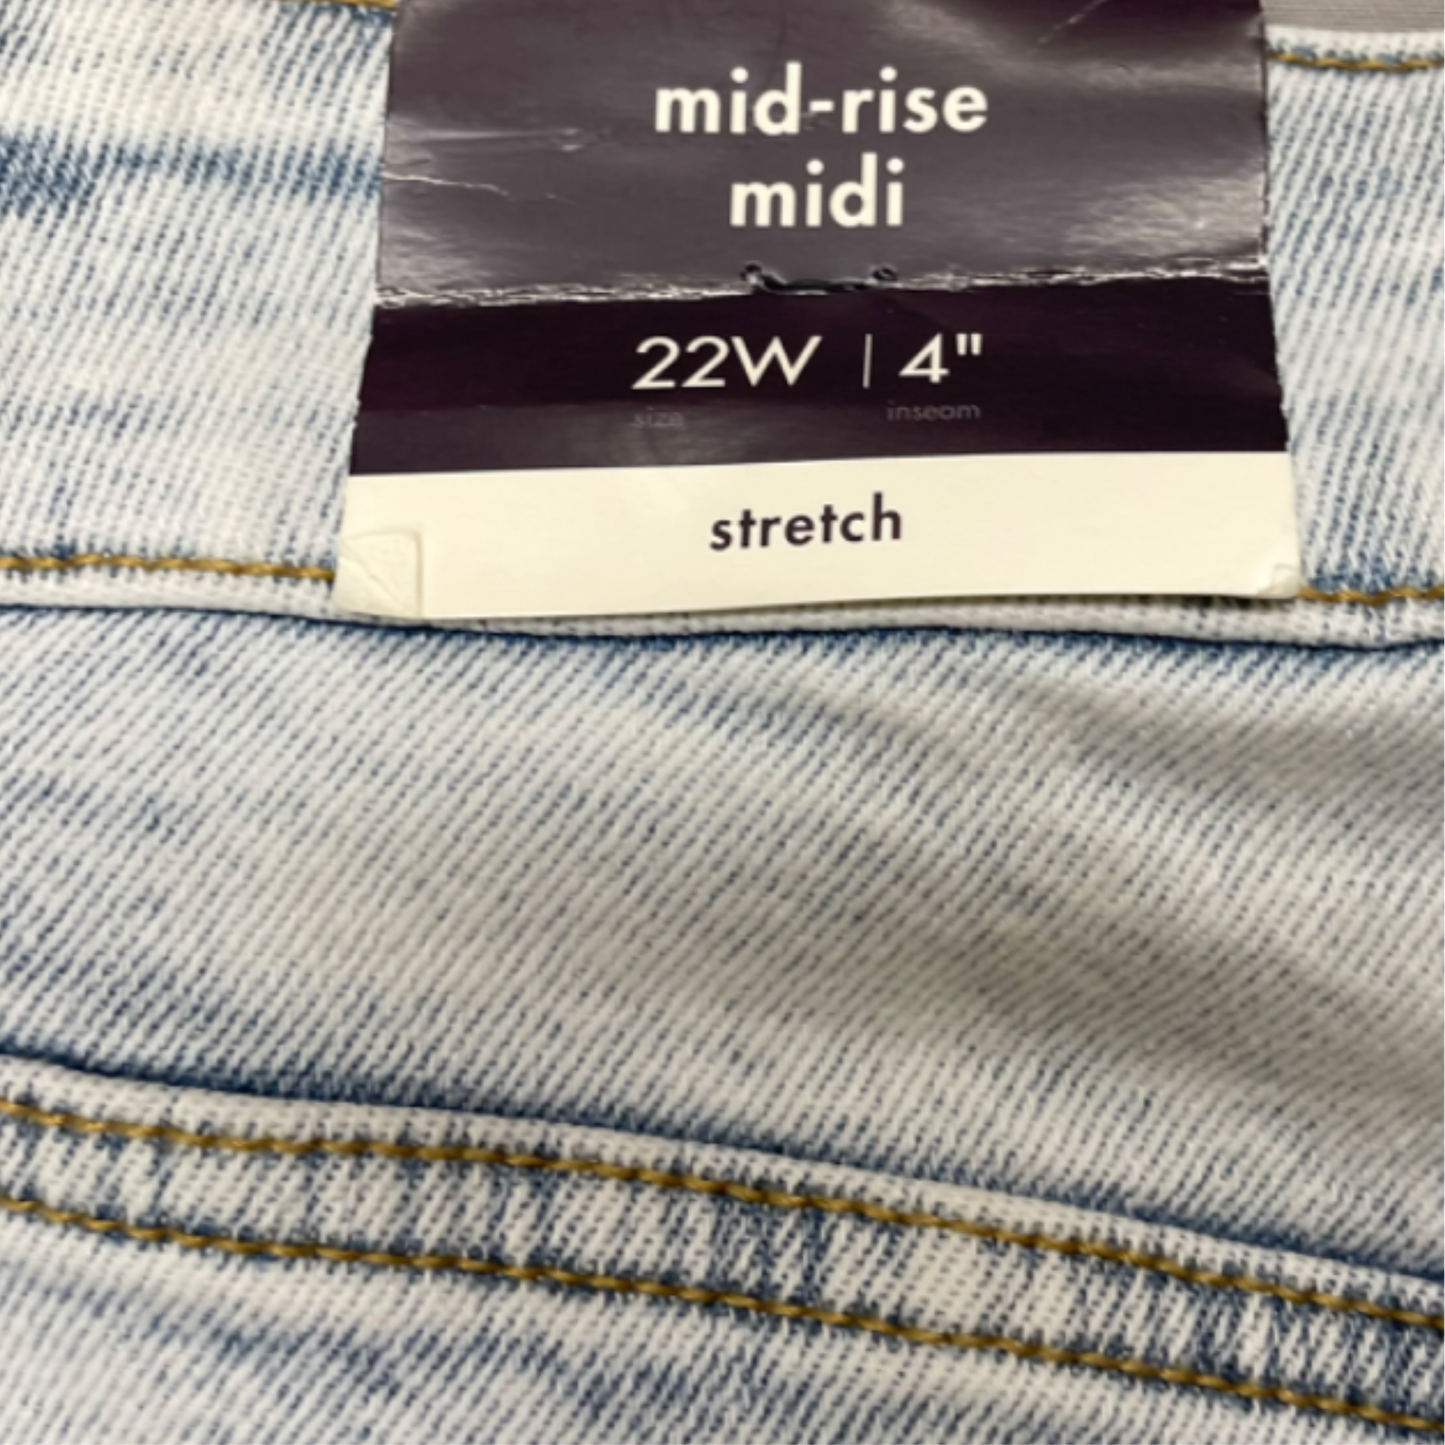 Denim Shorts By Ava & Viv, Size: 22w